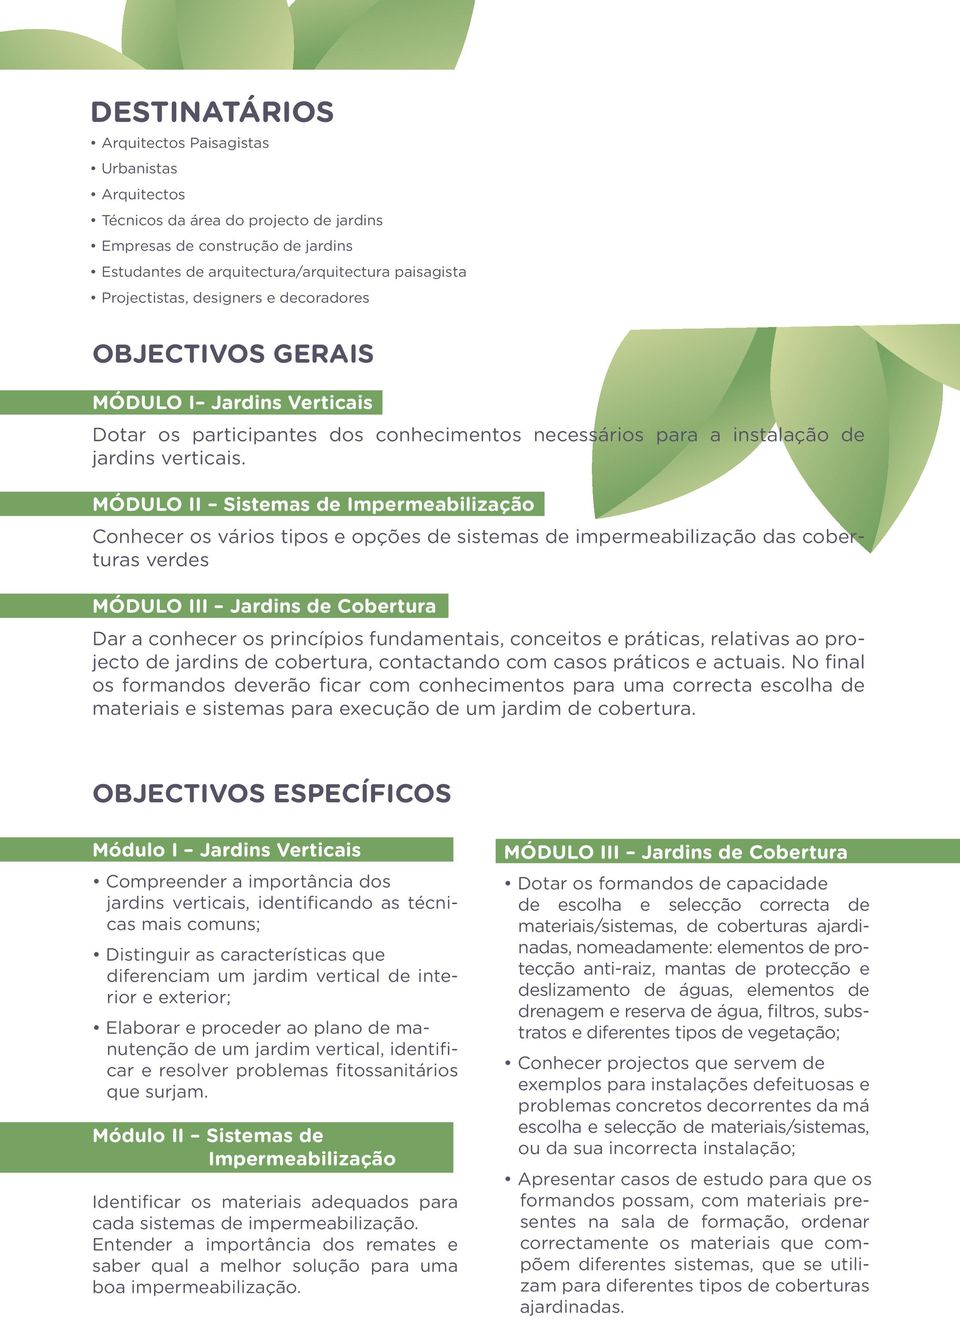 MÓDULO II Sistemas de Impermeabilização Conhecer os vários tipos e opções de sistemas de impermeabilização das coberturas verdes MÓDULO III Jardins de Cobertura Dar a conhecer os princípios